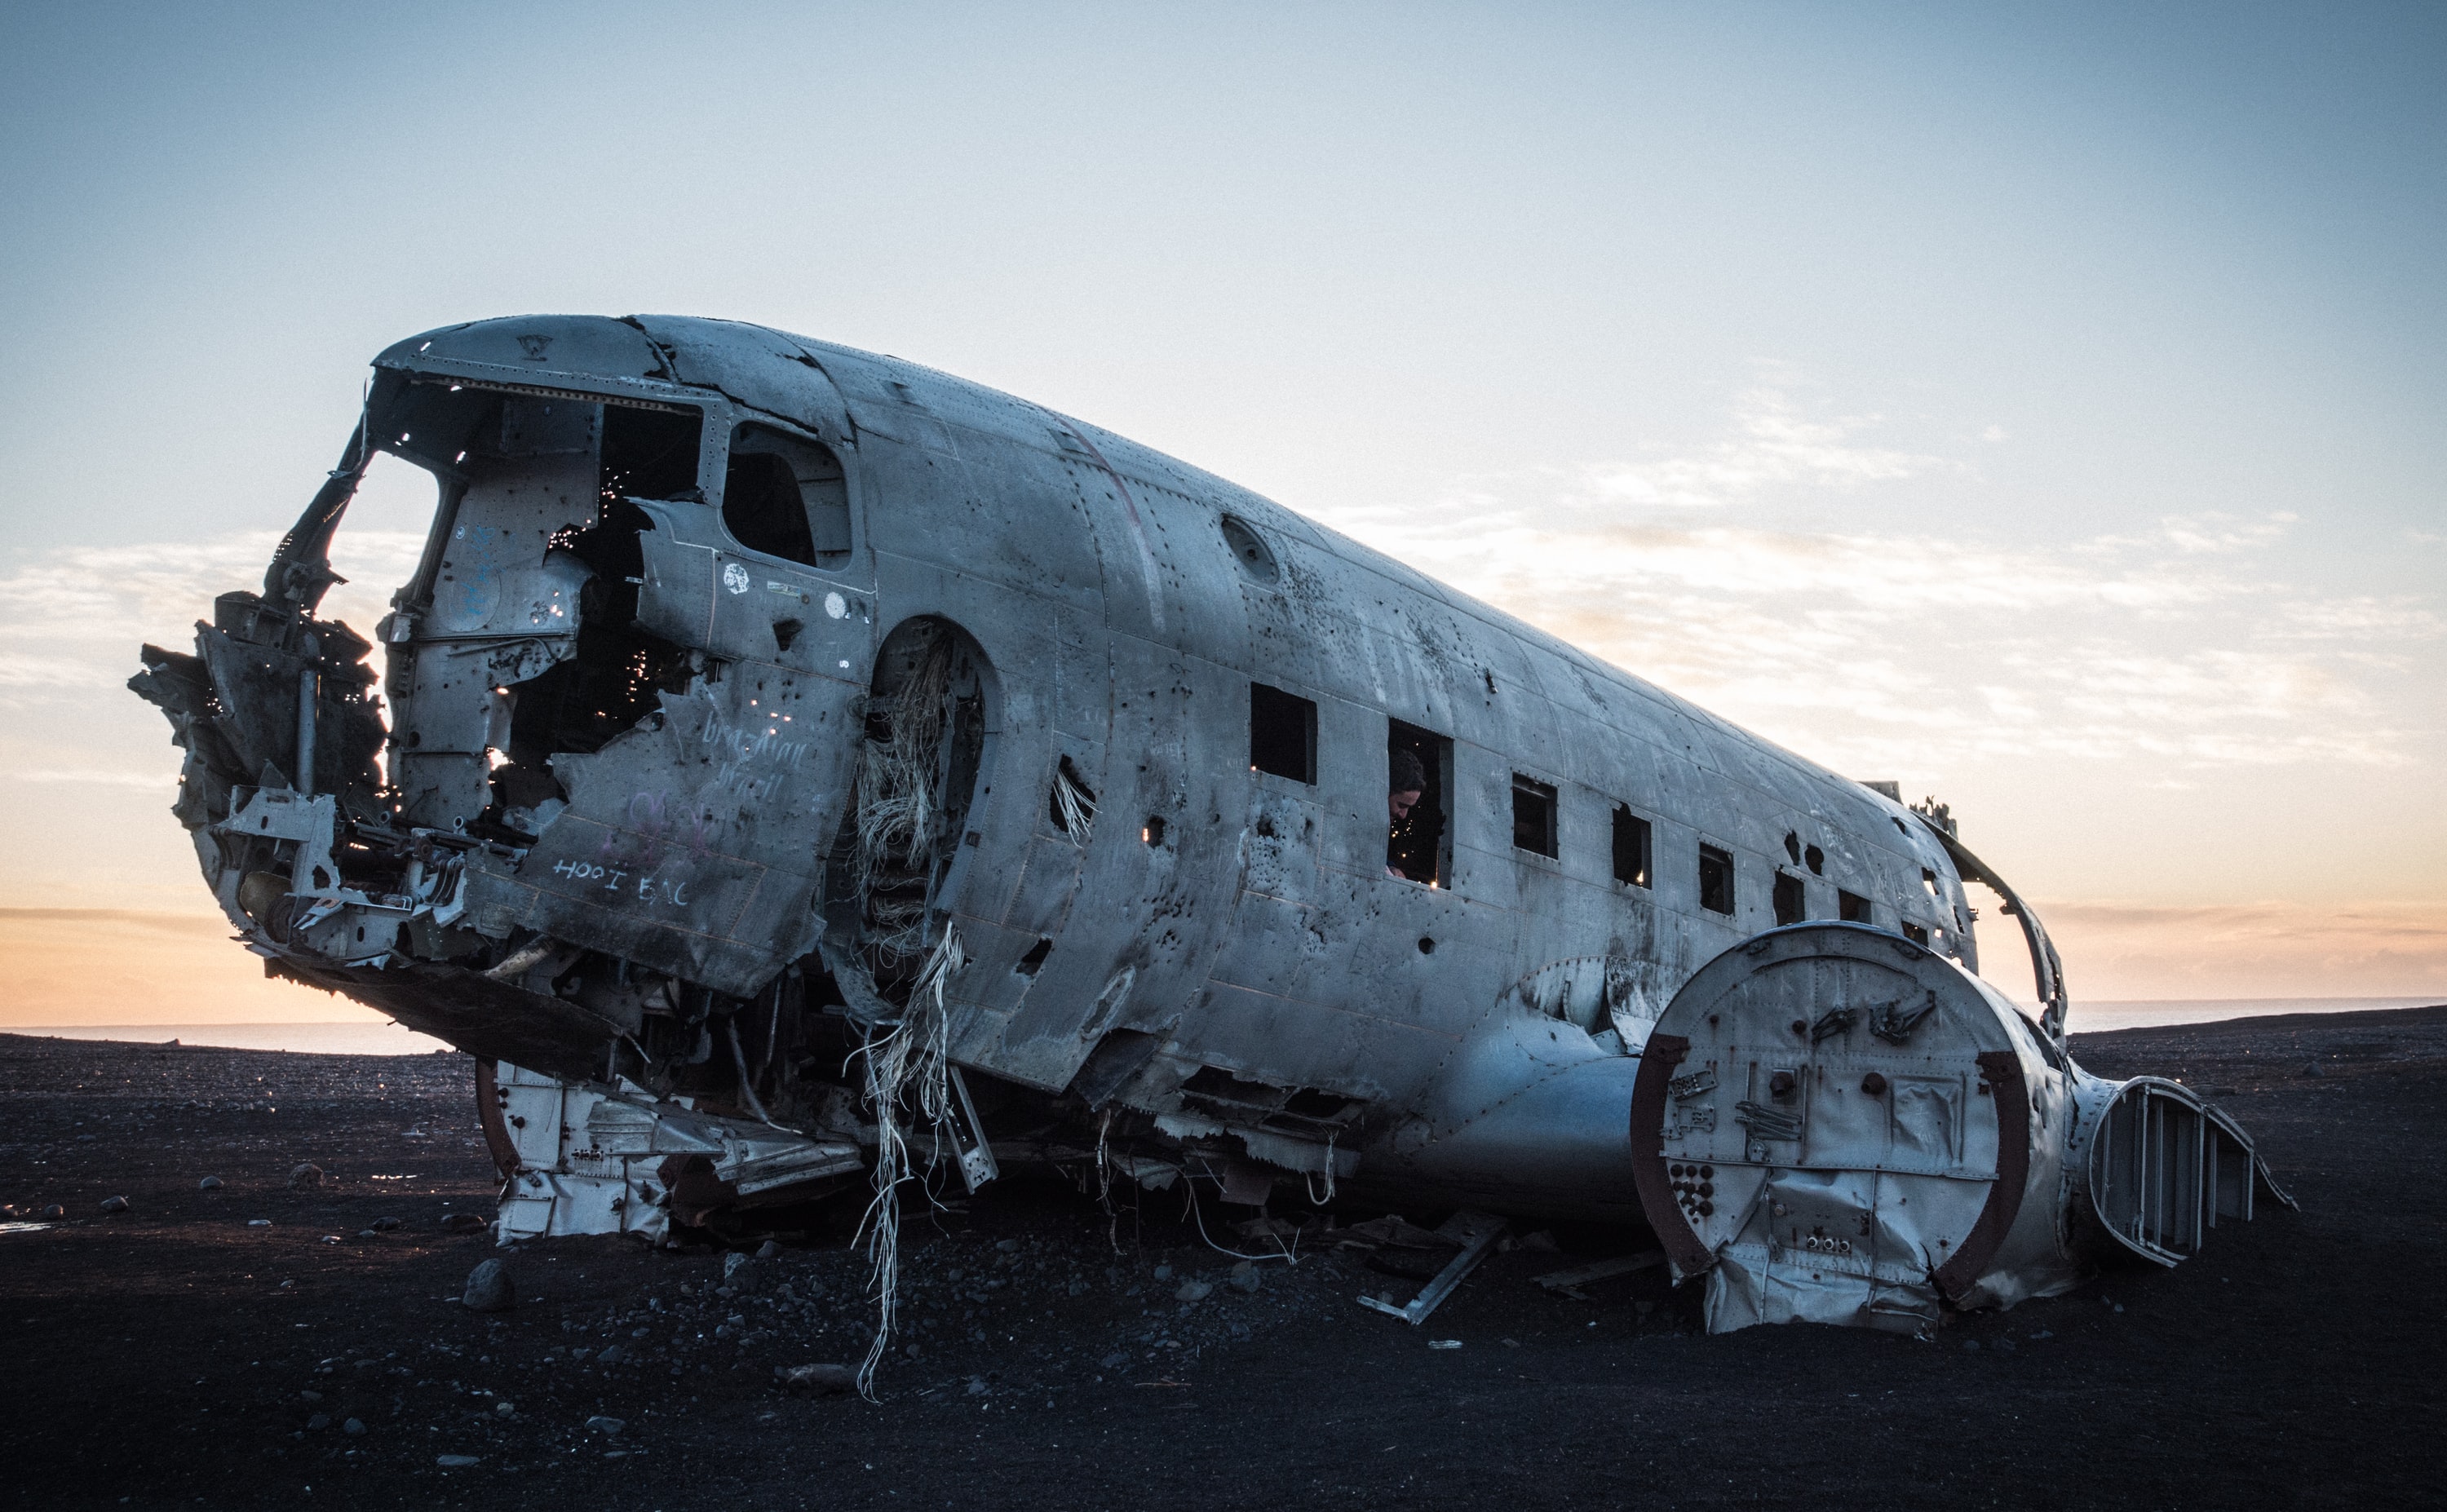 Solheimasandur plane wreck, Iceland.